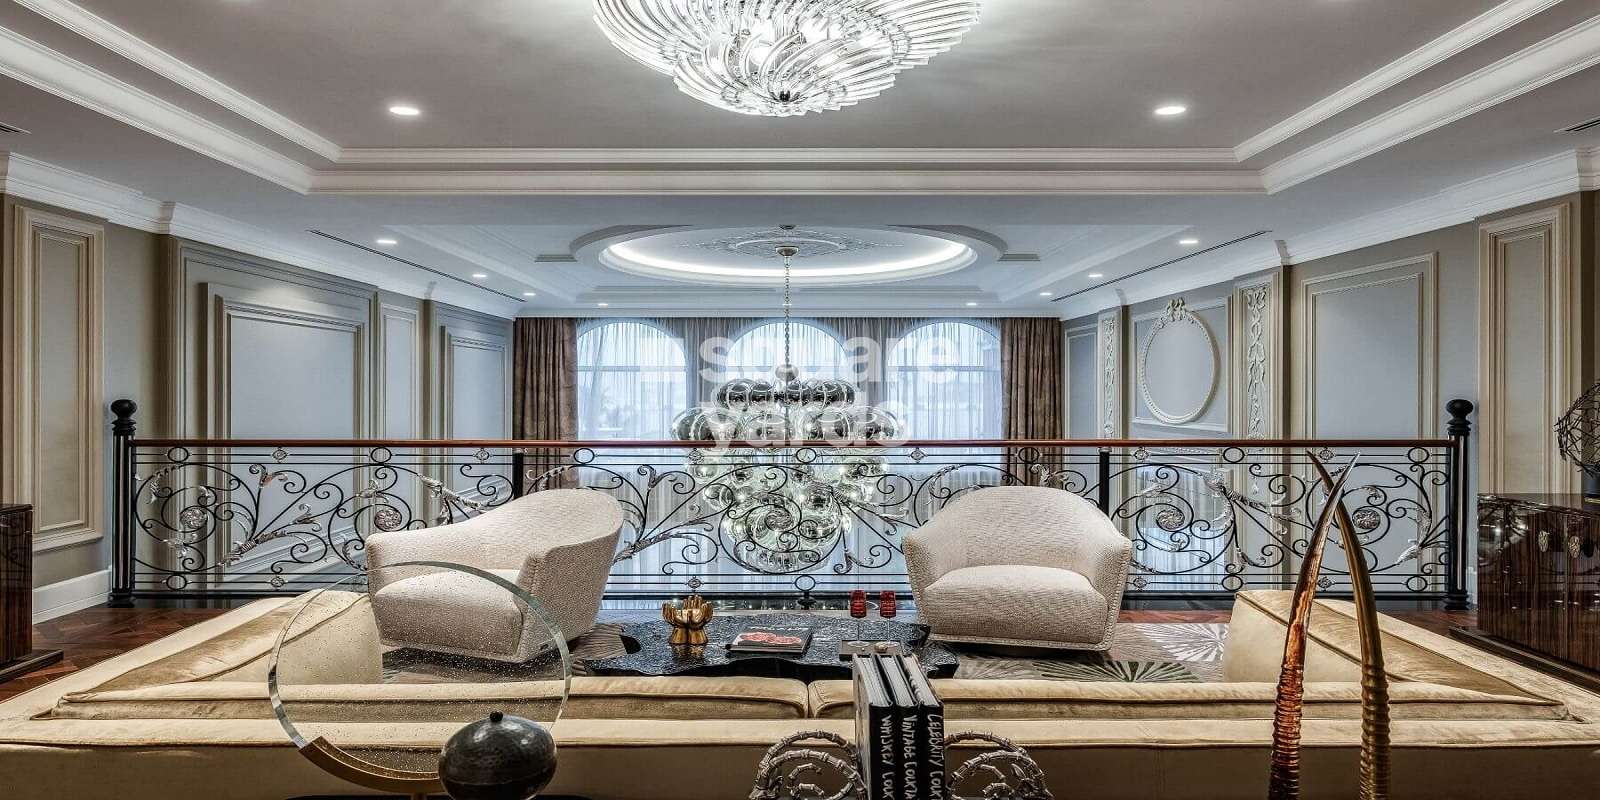 22 carat penthouse palm jumeirah project amenities features5